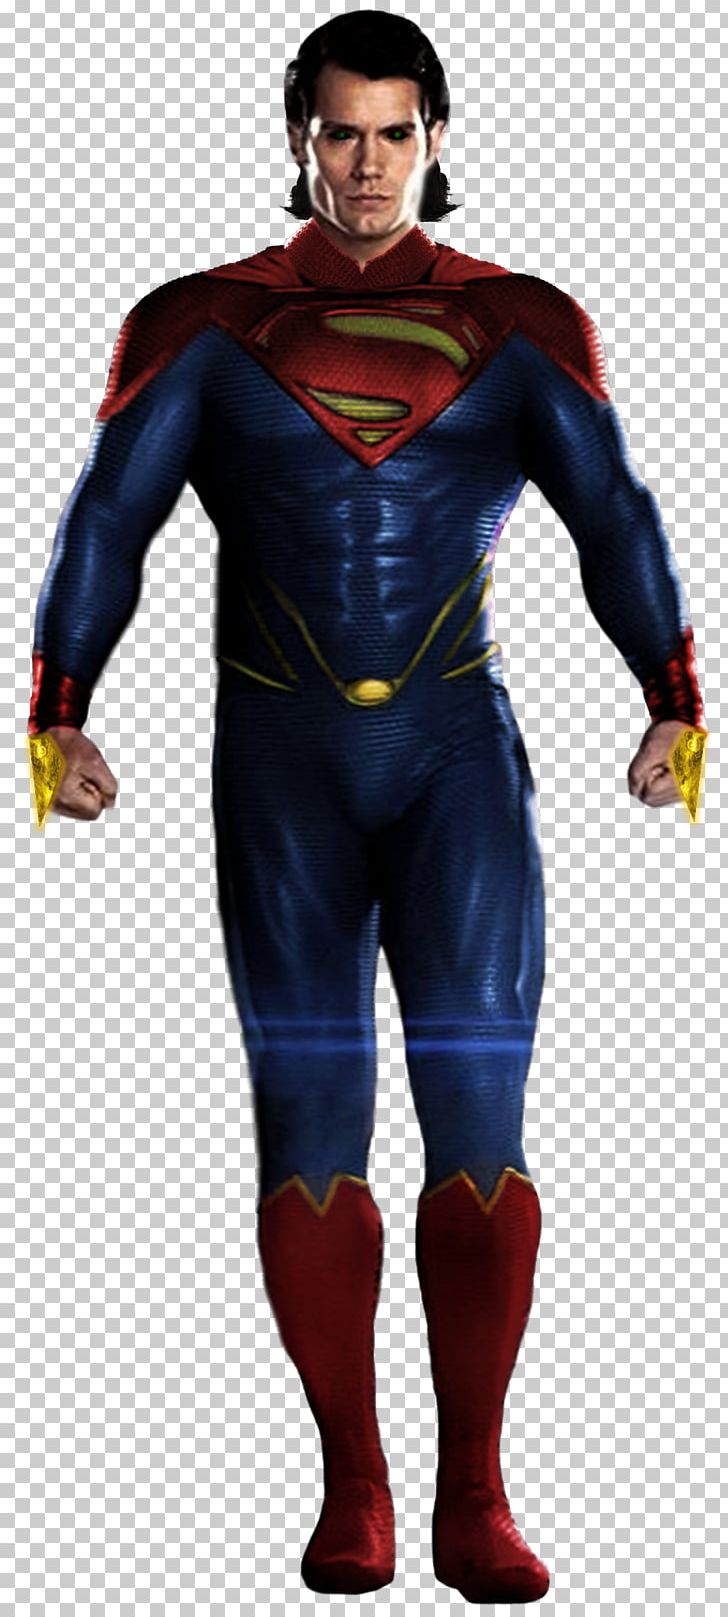 Superman Man Of Steel Supergirl Batman Superhero PNG, Clipart, Action Figure, Batman, Batman V Superman, Costume, Dc Comics Free PNG Download